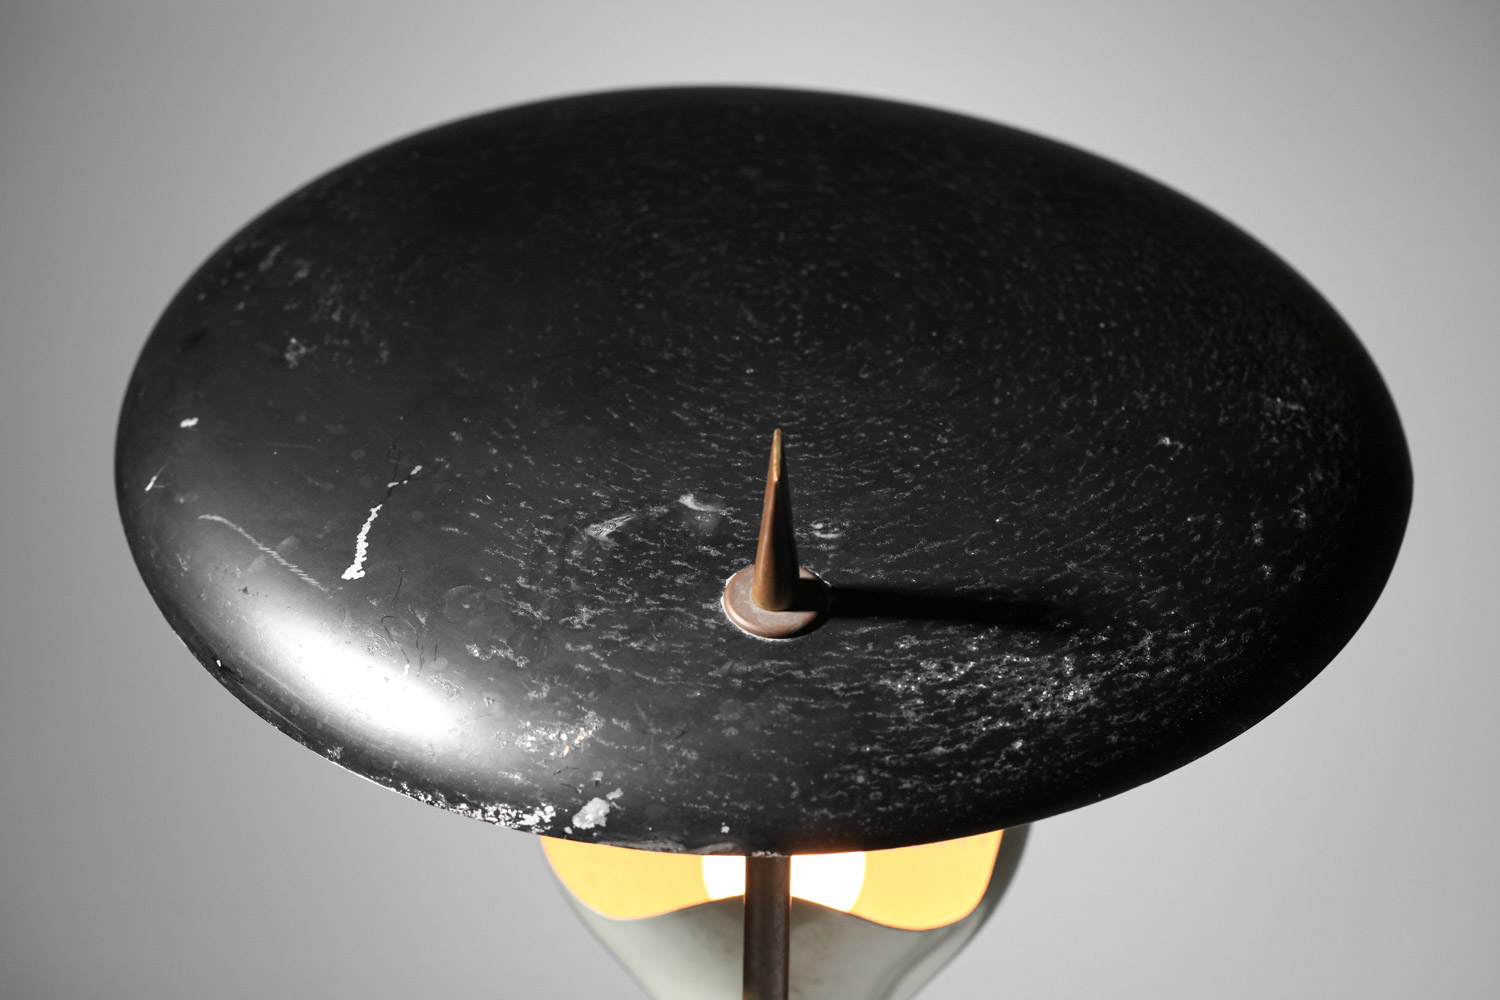 Lampe de table stillux italienne des années 60 grise et noire - G718